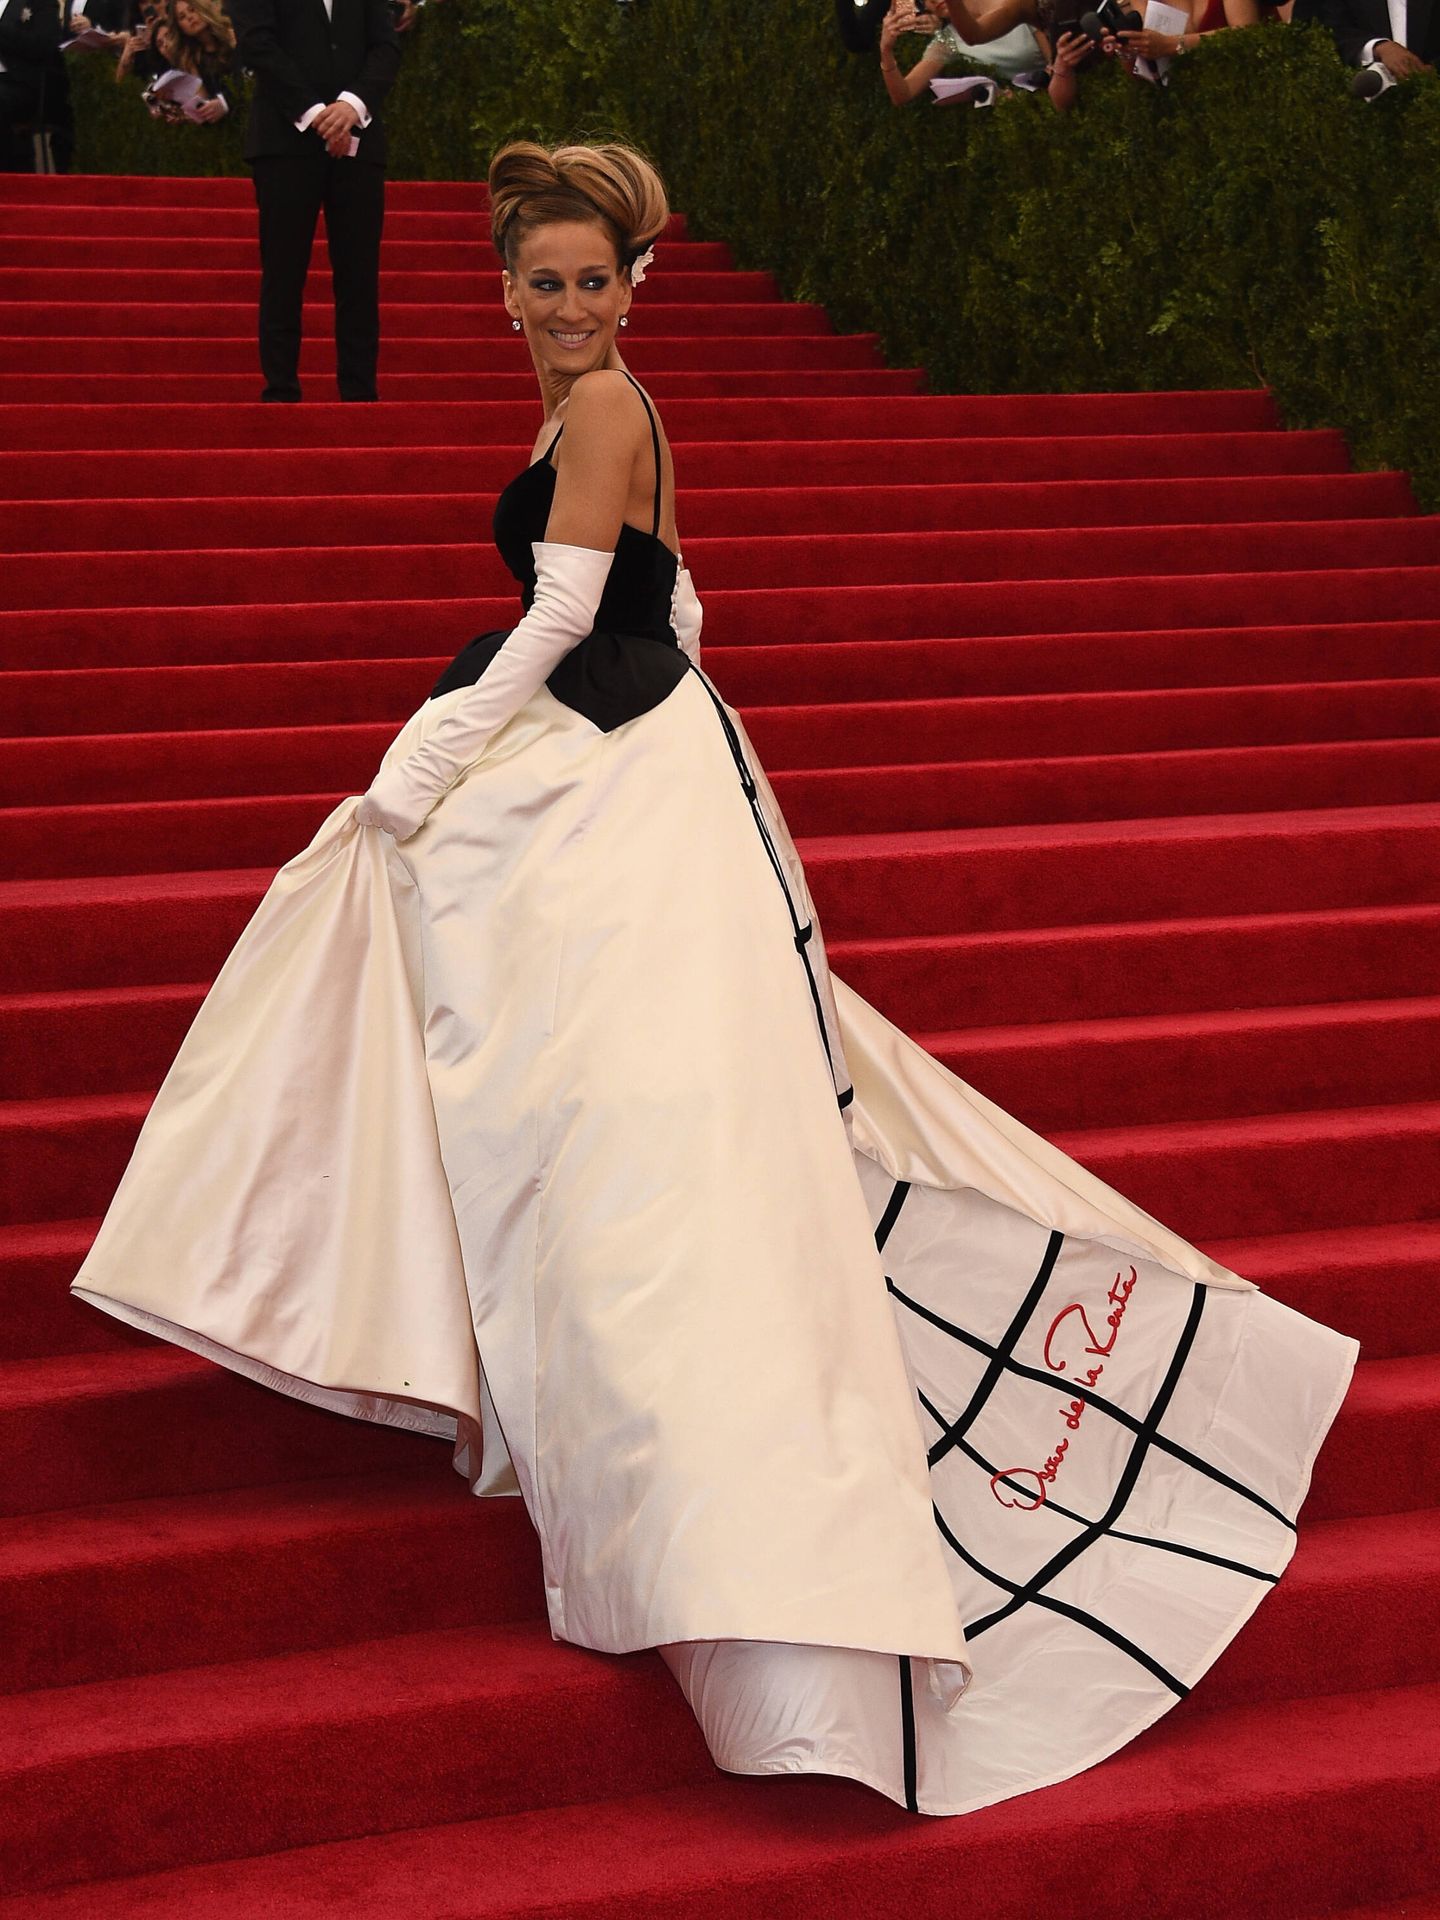 Sarah Jessica Parker, en la gala del Met de 2014 con vestido de Oscar de la Renta. (Getty)